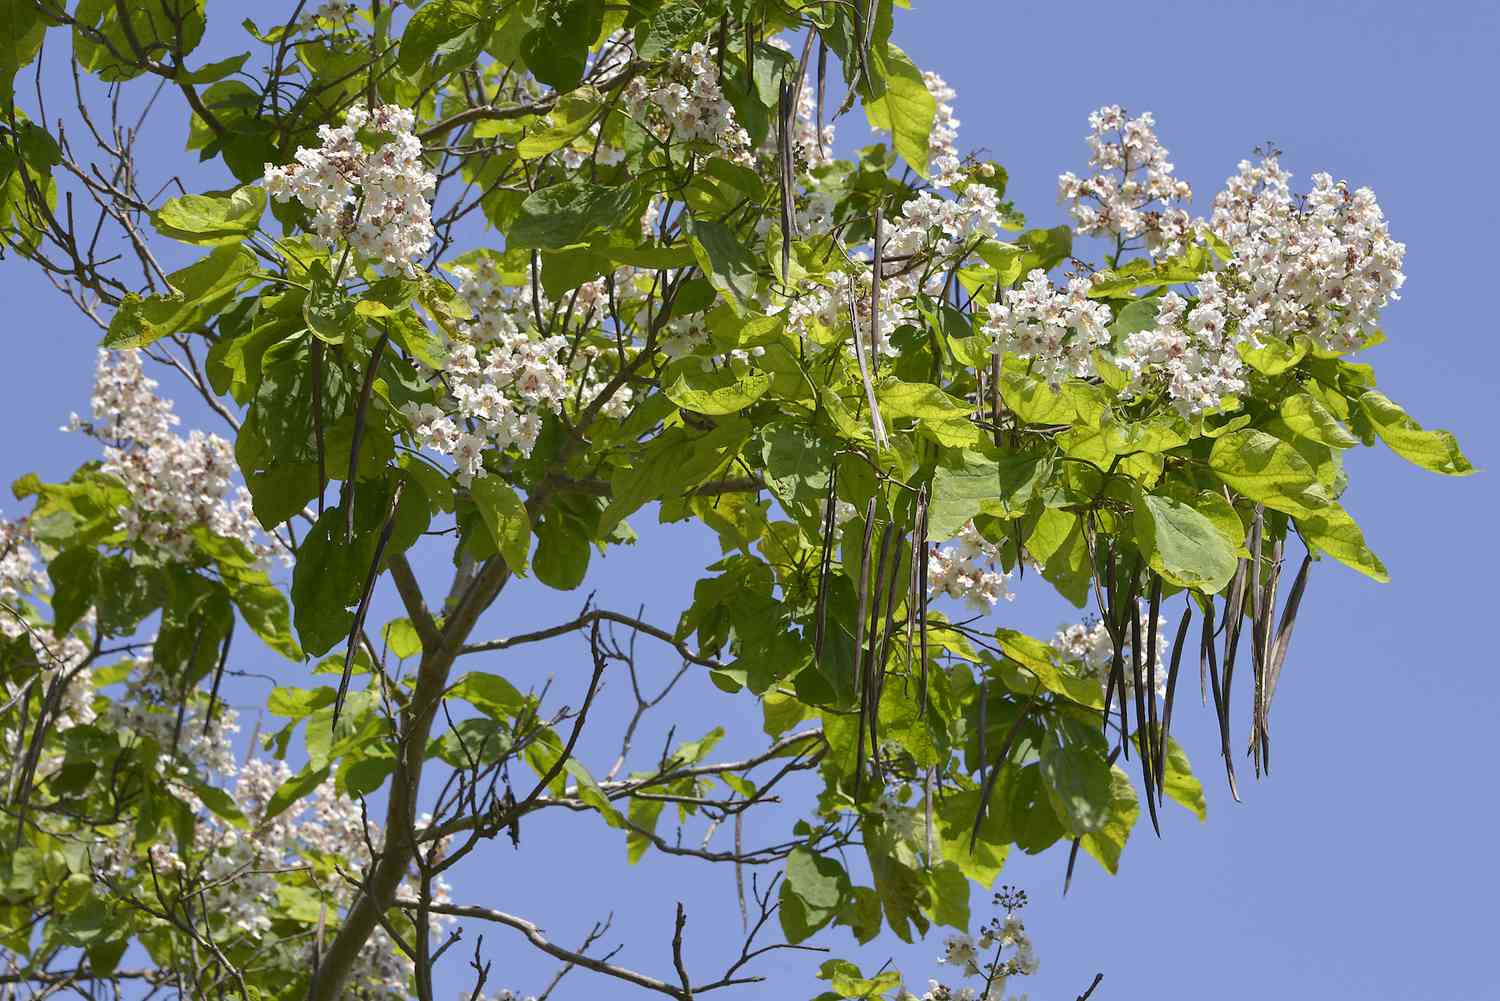 Catalpa-Baum mit Blüten, großen Blättern und Samenkapseln vor einem blauen Himmel